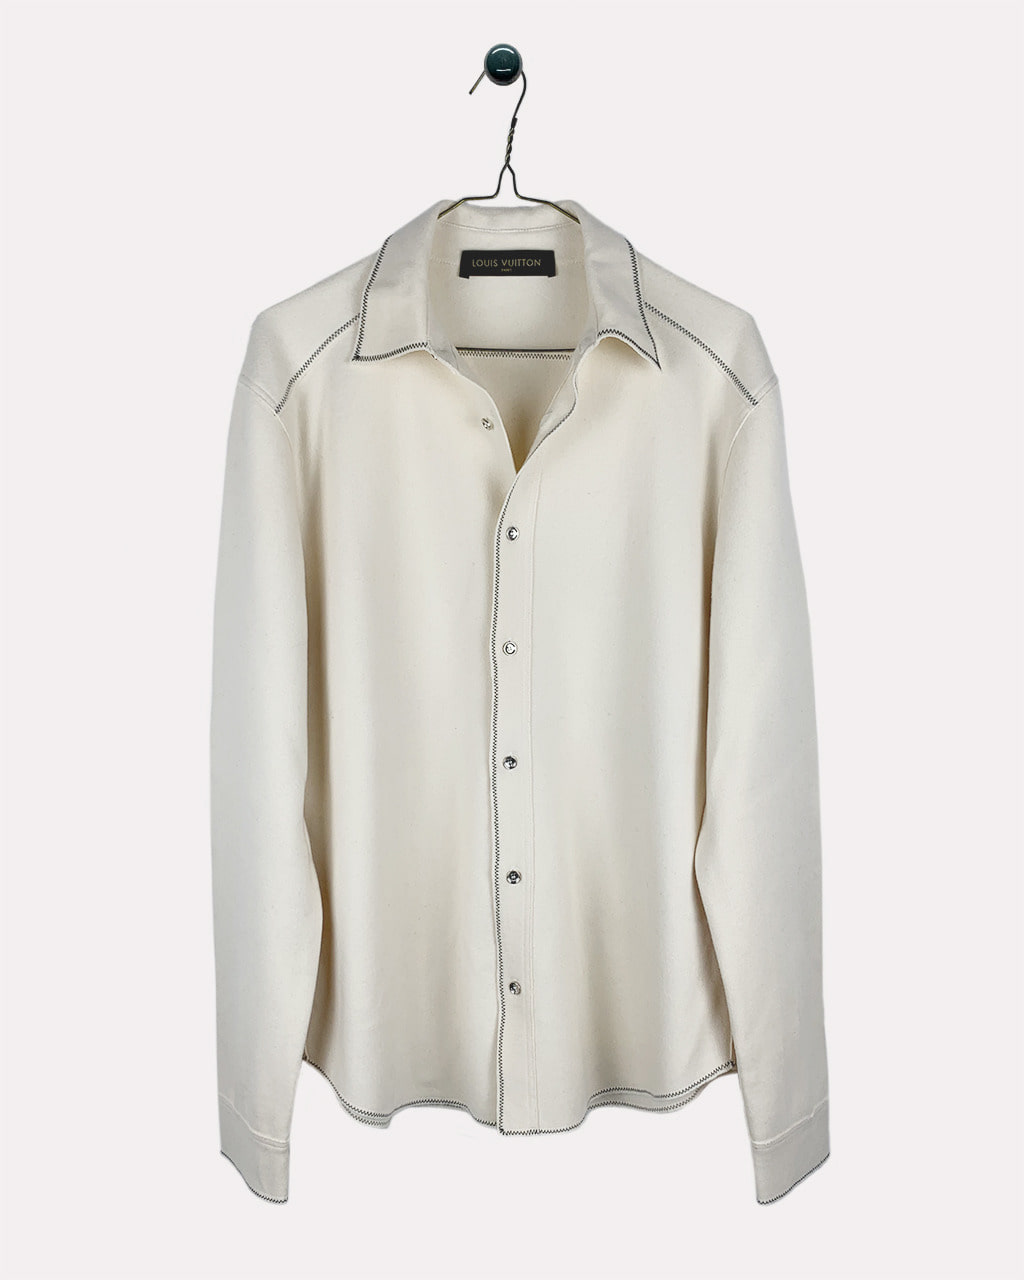 Cashmere Shirt / Jacket